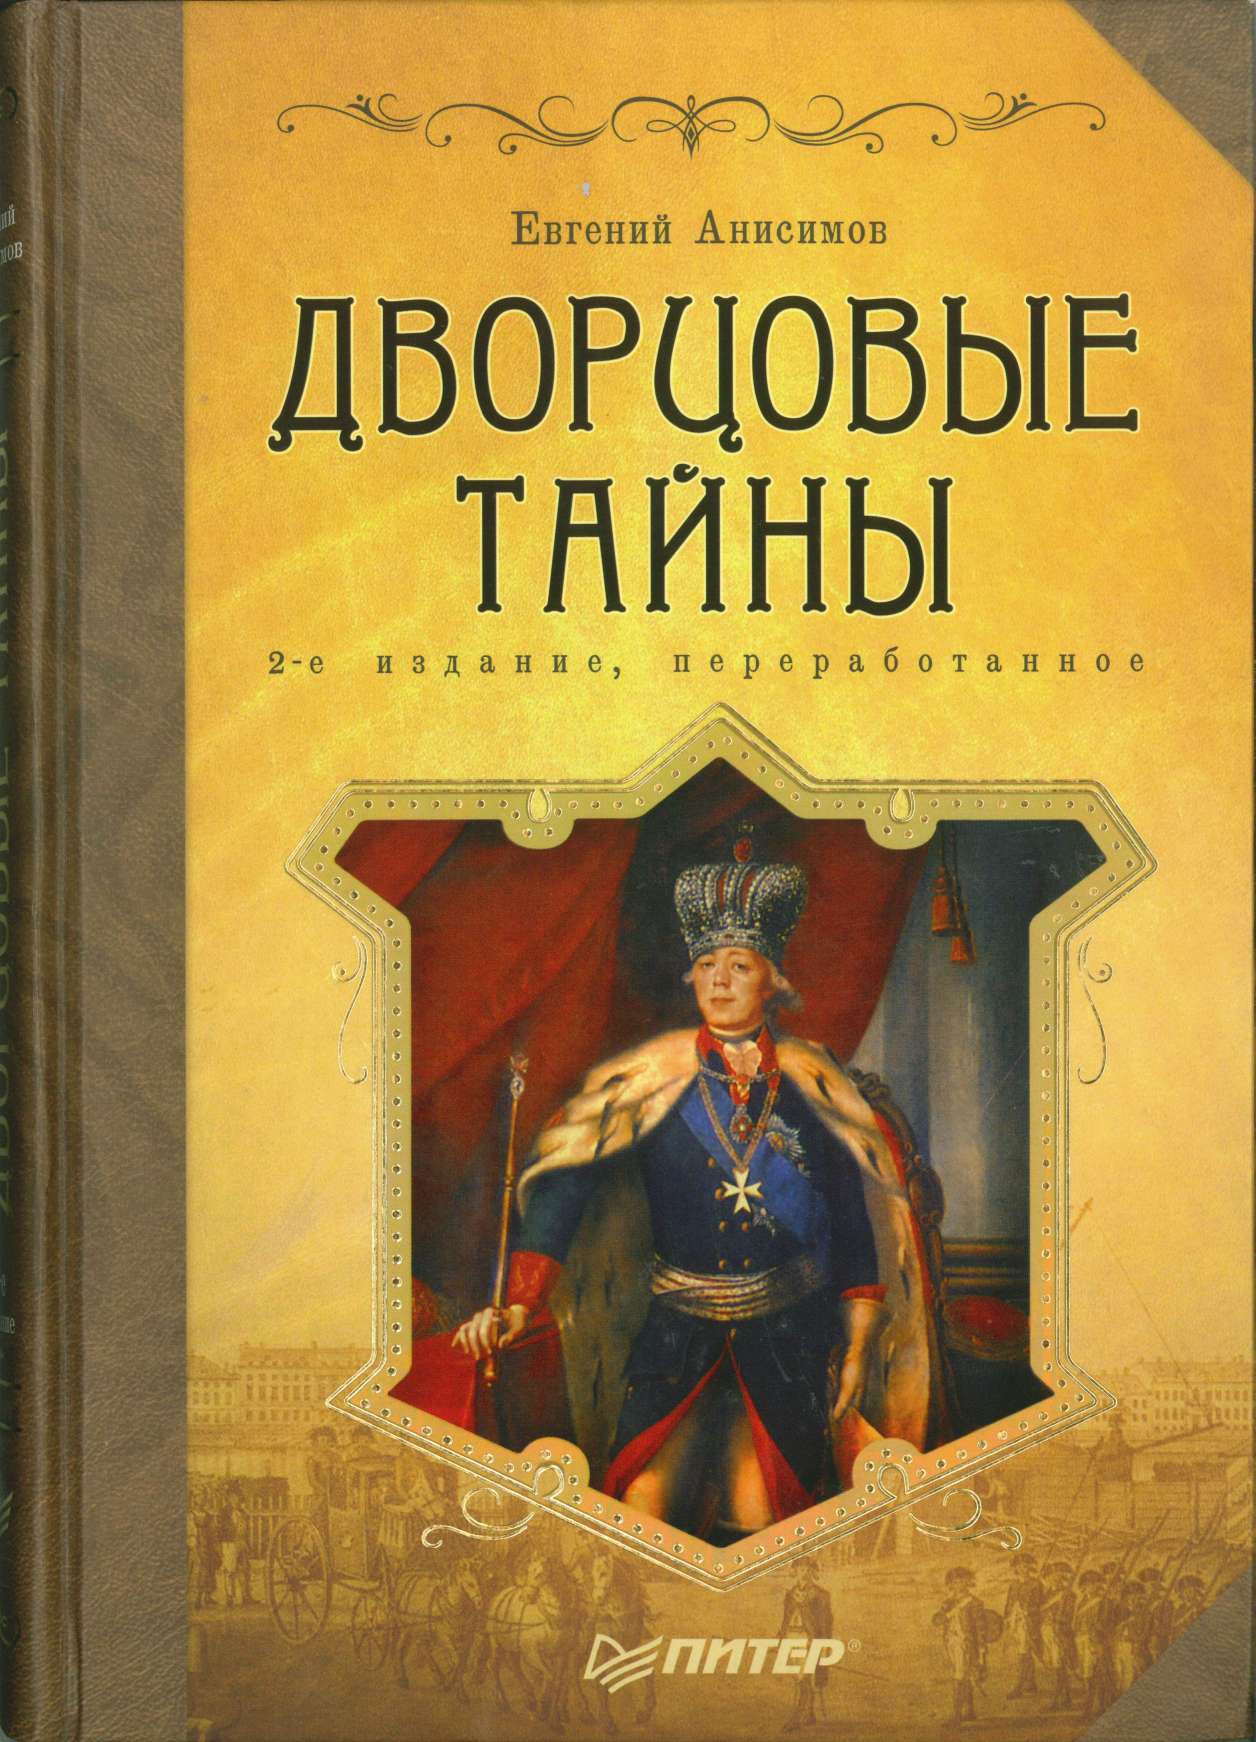 Петербургские тайны книга скачать бесплатно txt